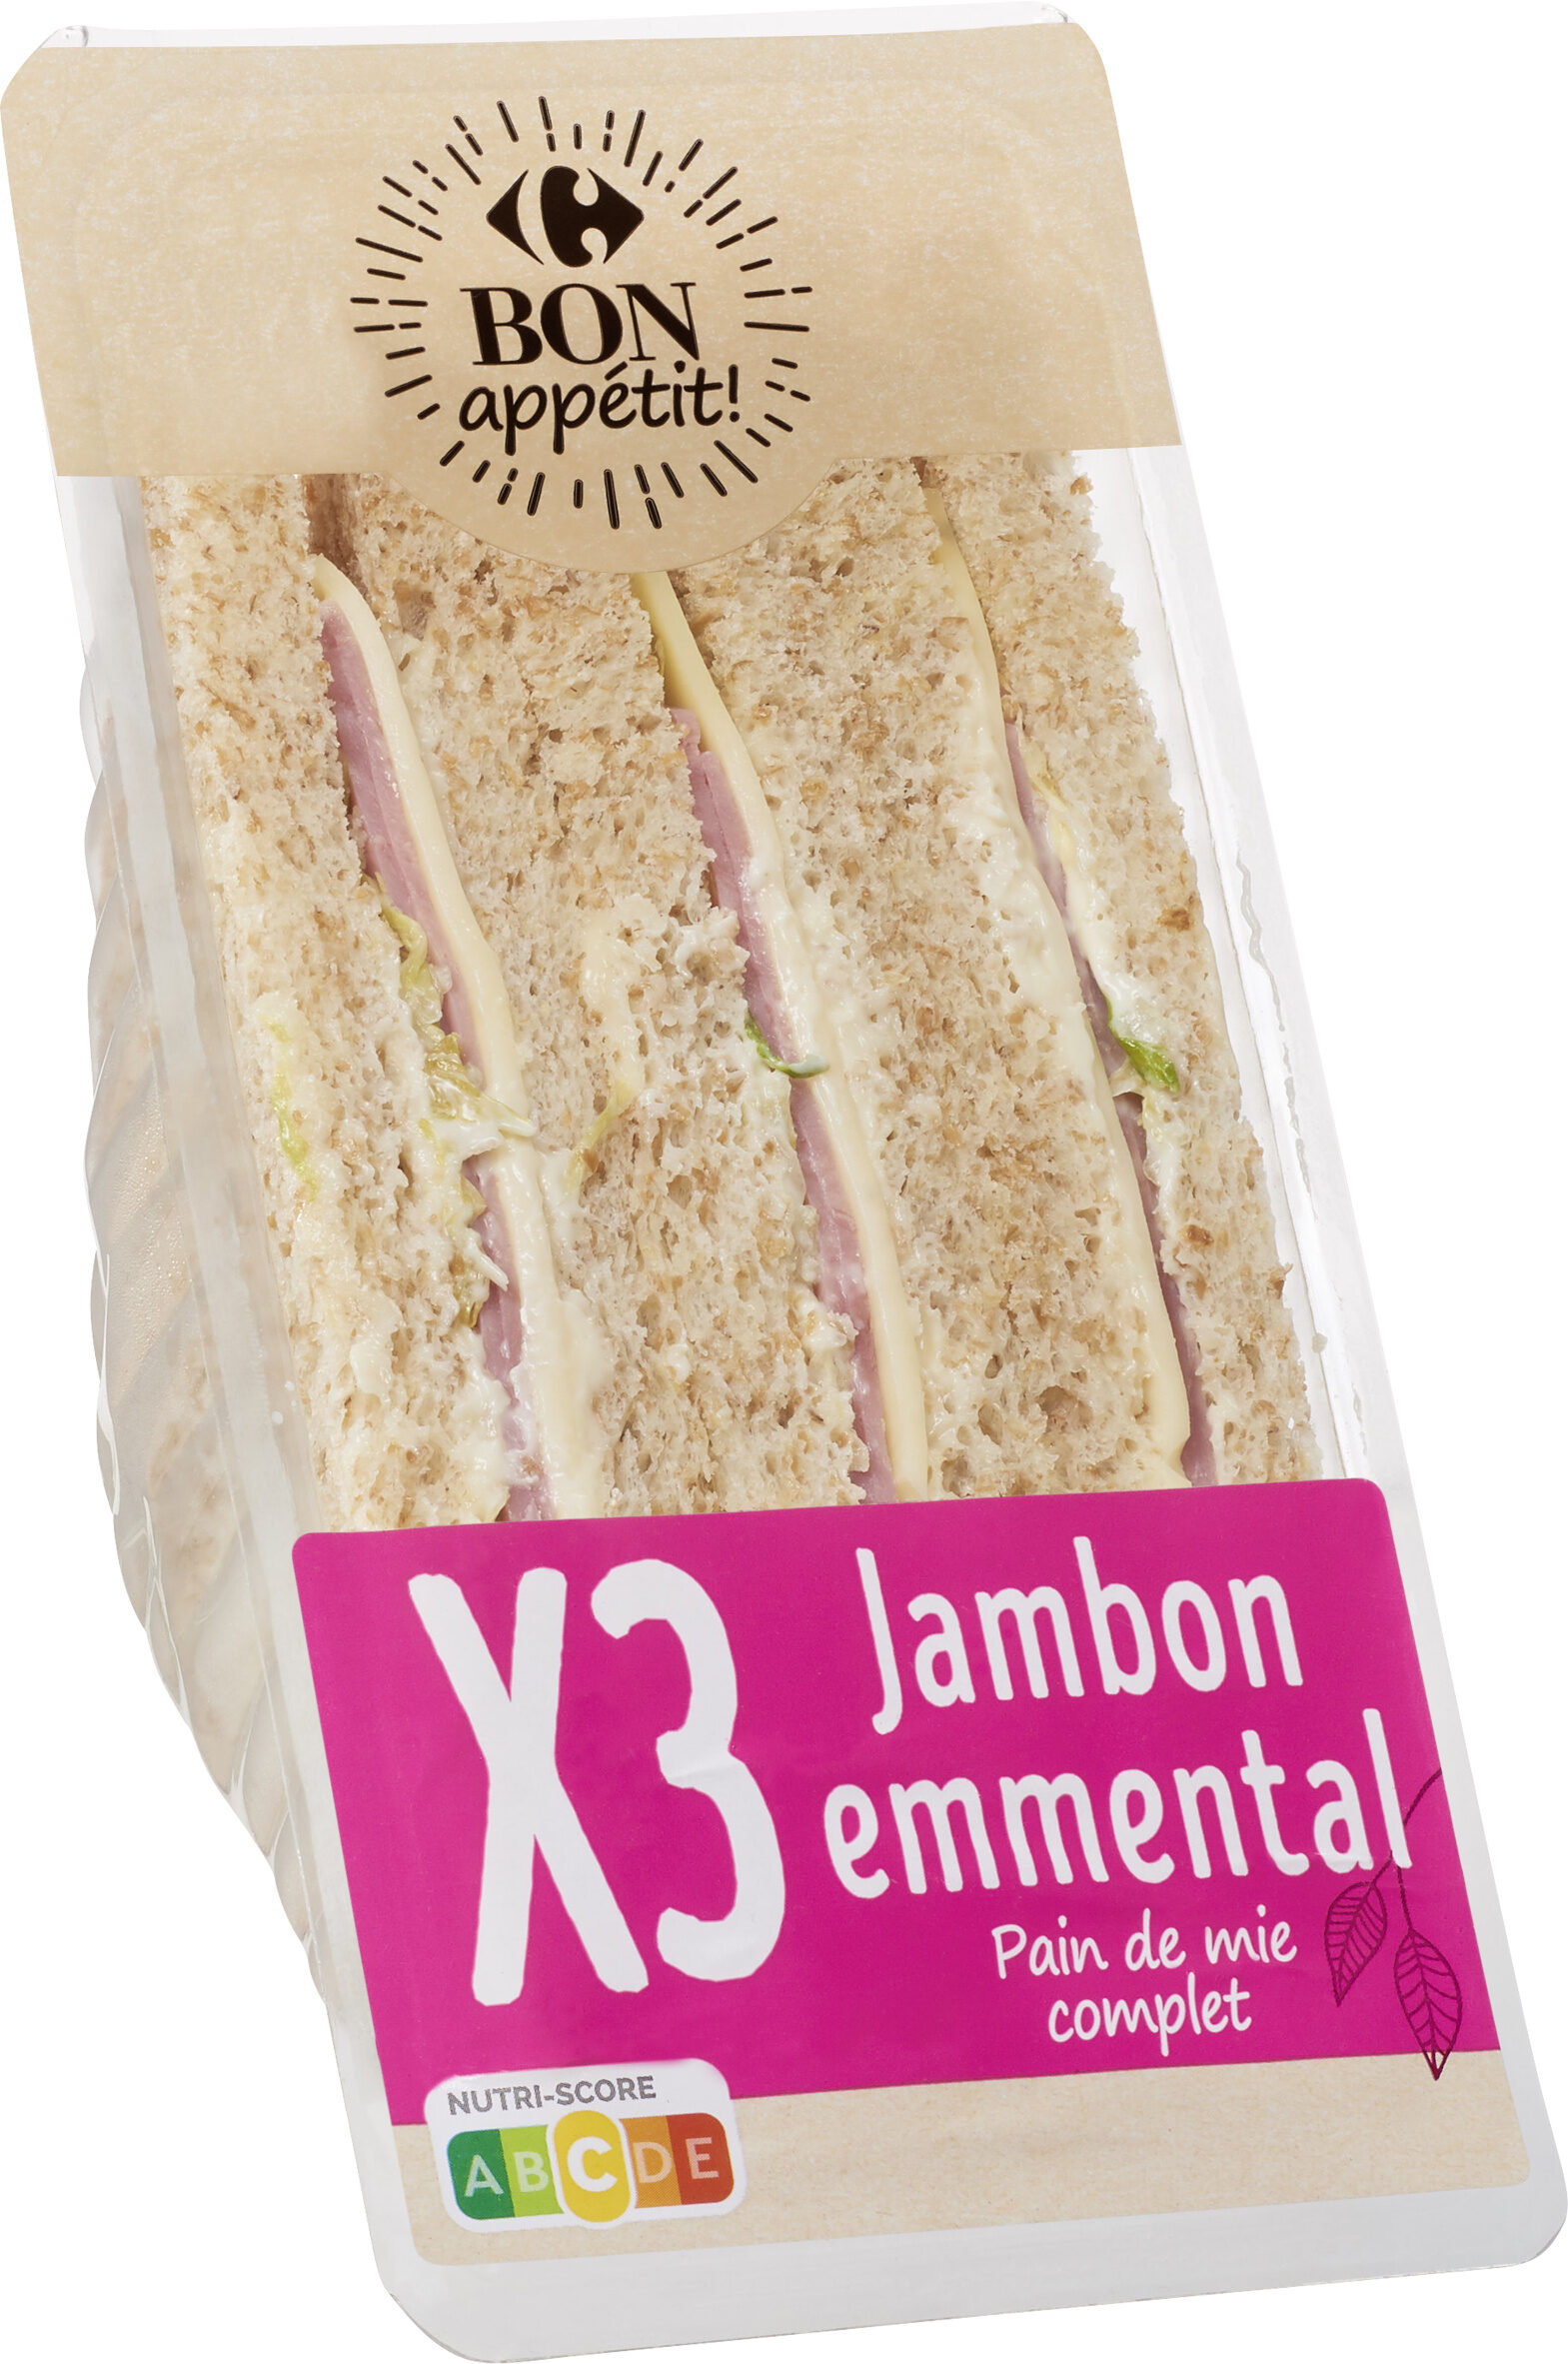 jambon emmental - Product - fr